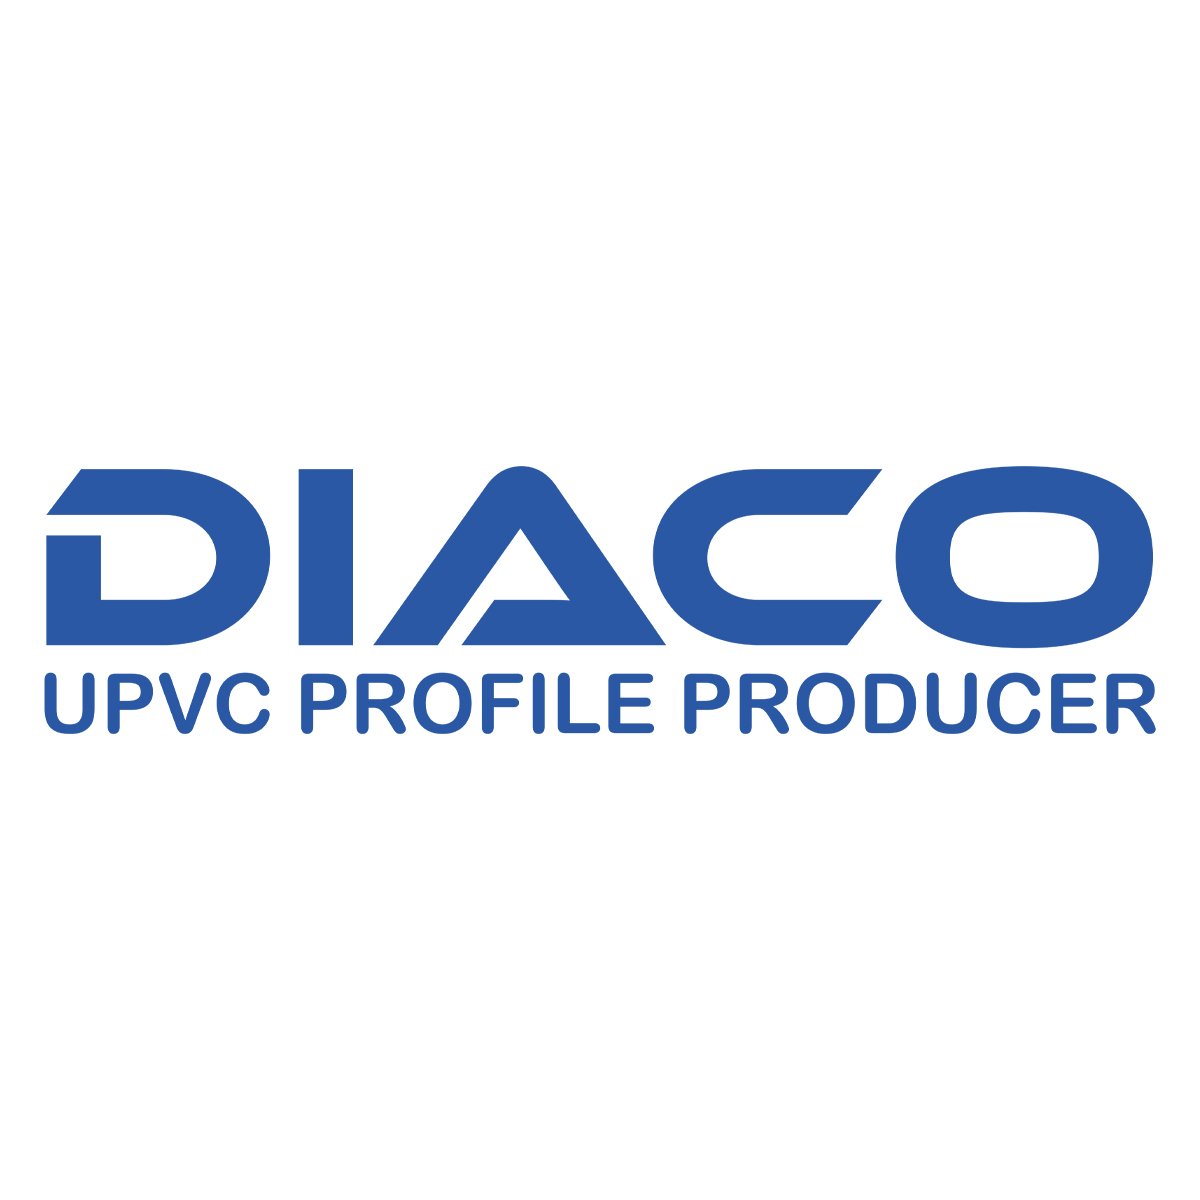 کارشناس فروش و بازاریابی | Sales and Marketing Expert - دیاکو پروفیل | Diaco Profile